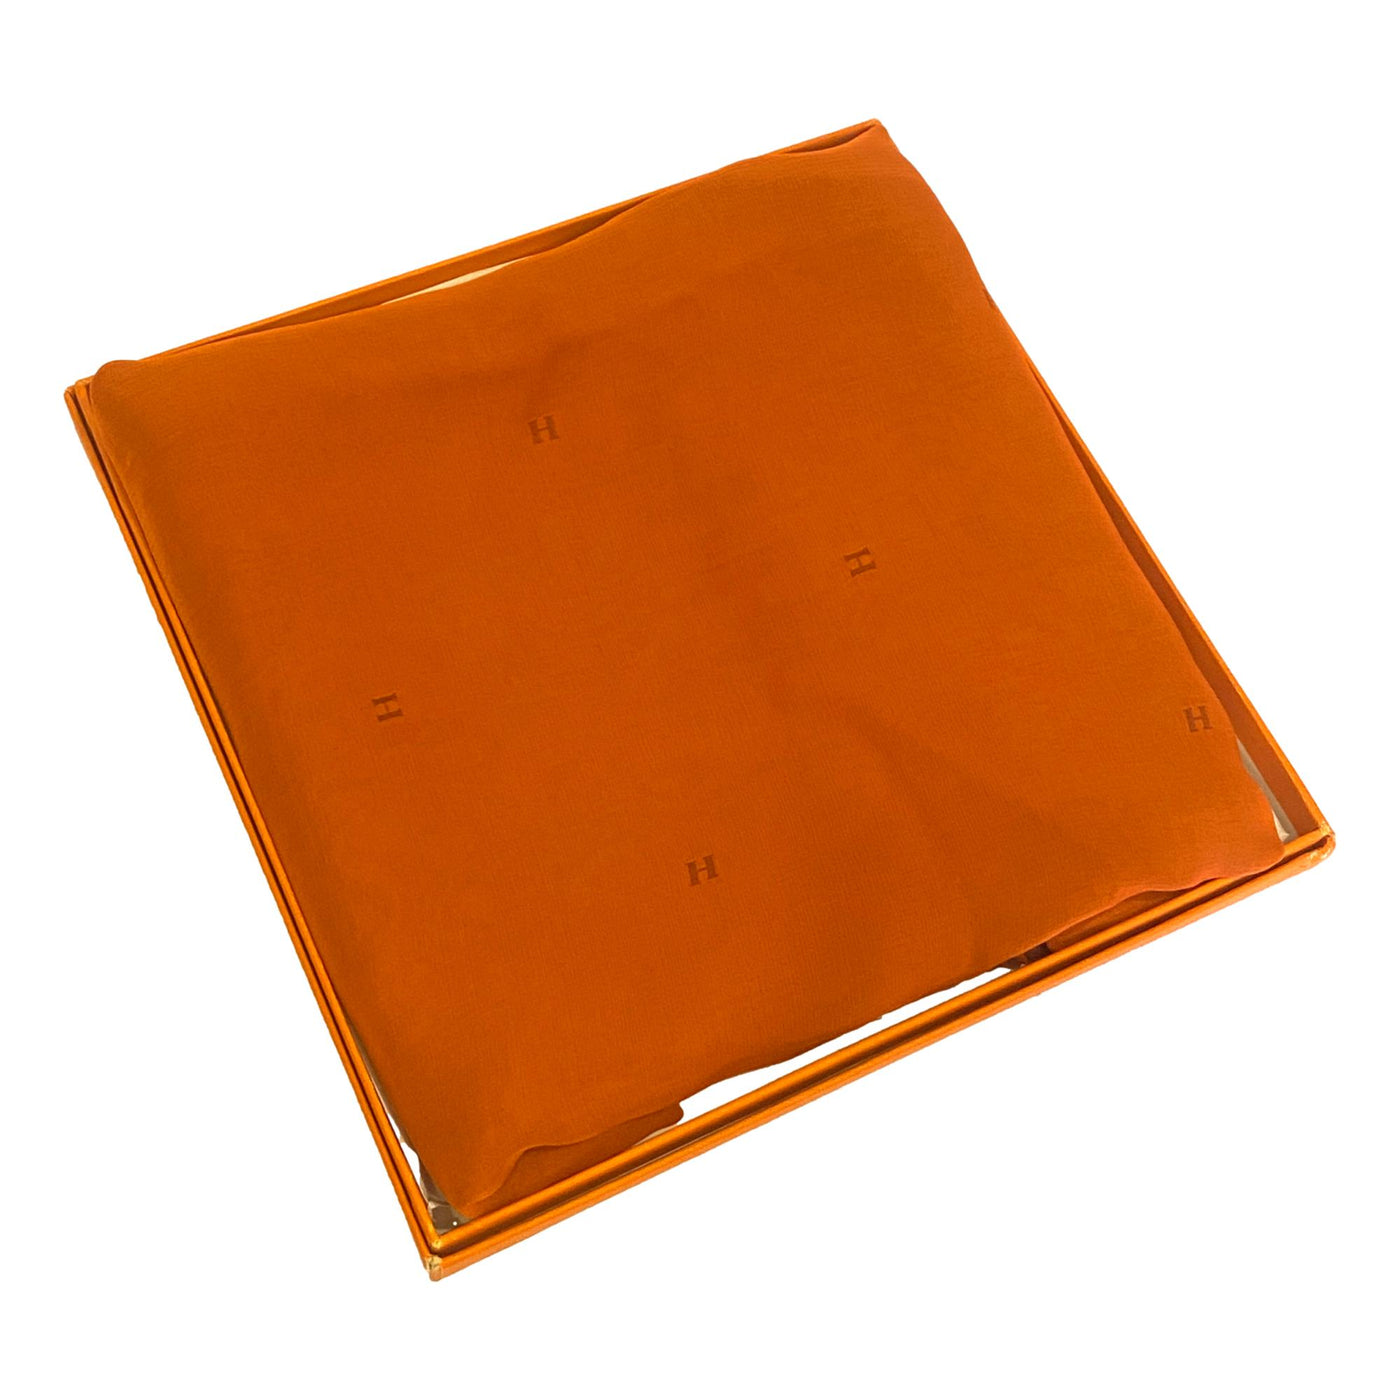 Hermes Monogram Fringe Orange and Siena Chiffon Long Stole Scarf - LUXURYMRKT